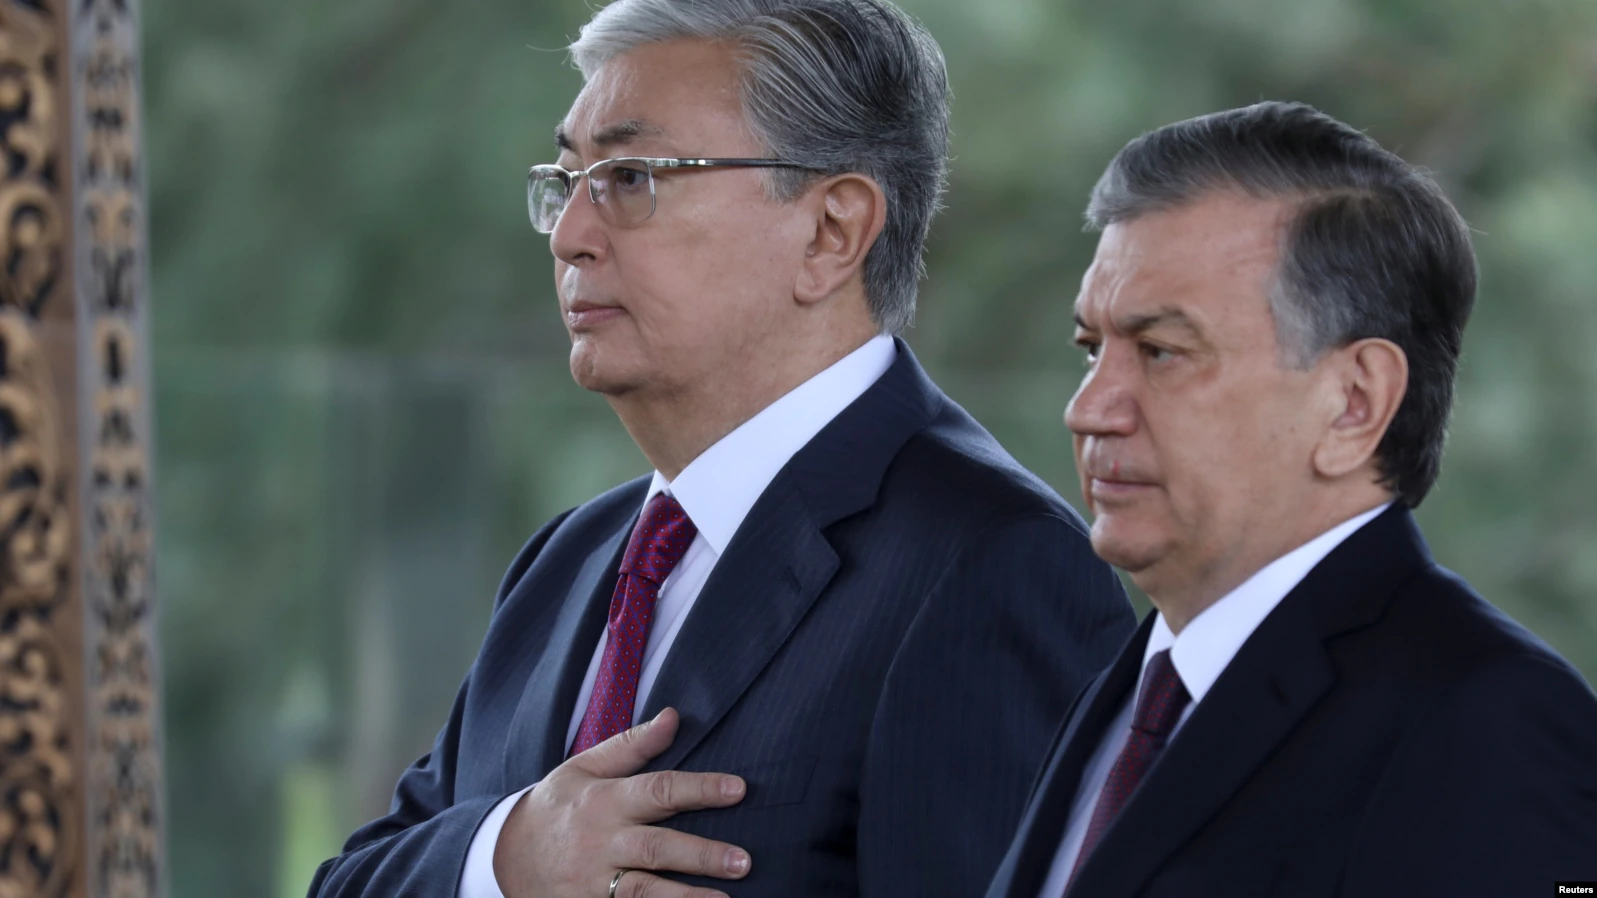 Пустые обещания: как в Казахстане и Узбекистане всё сулят, да никак не проведут реформы